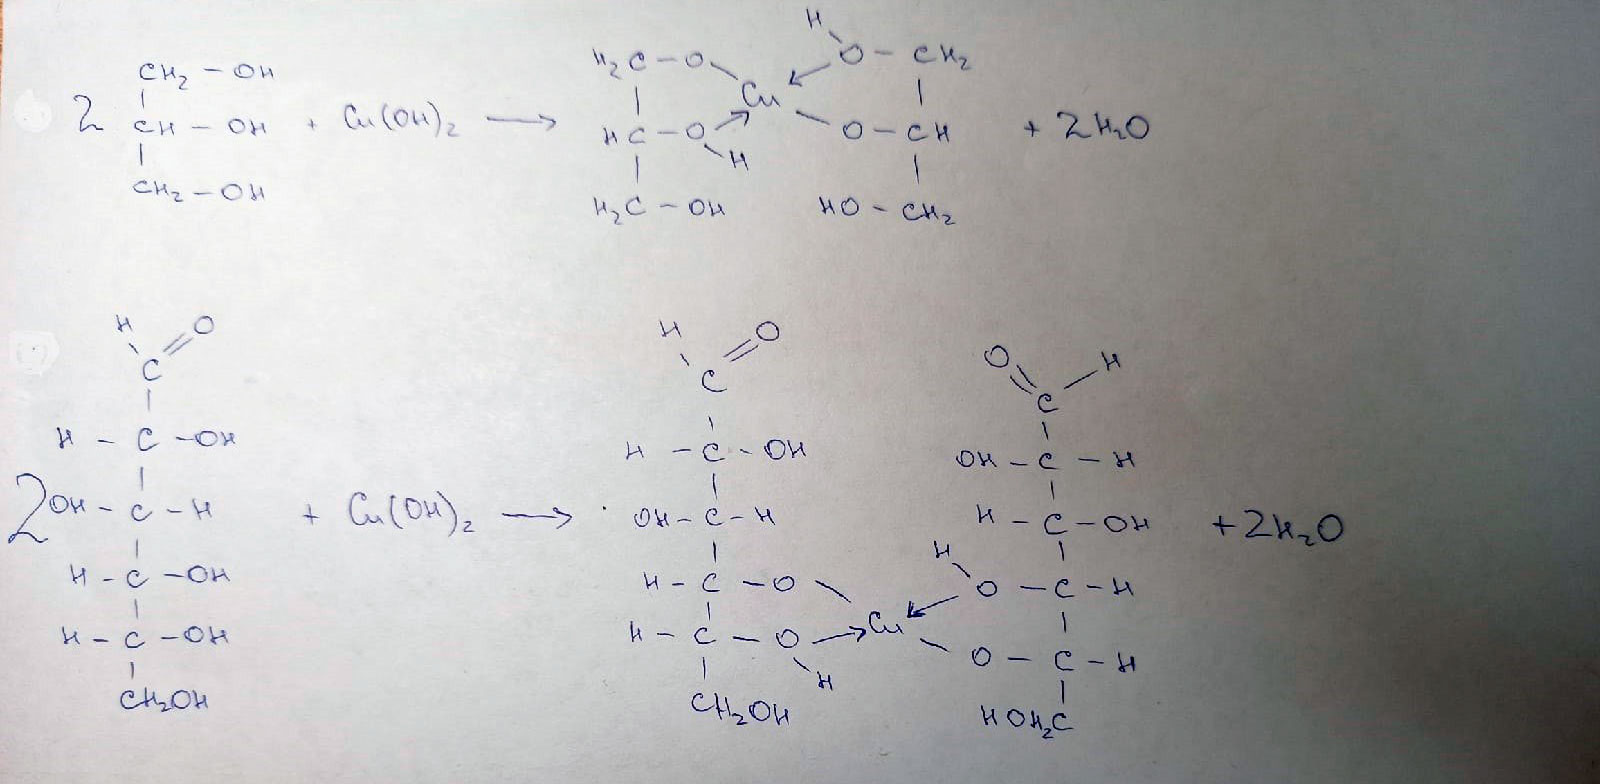 Форма гидроксида меди. Глицерин и оксид меди. Формальдегид и гидроксид меди 2. Глицерин и гидроксид меди 2. Глицерин и оксид меди 2.